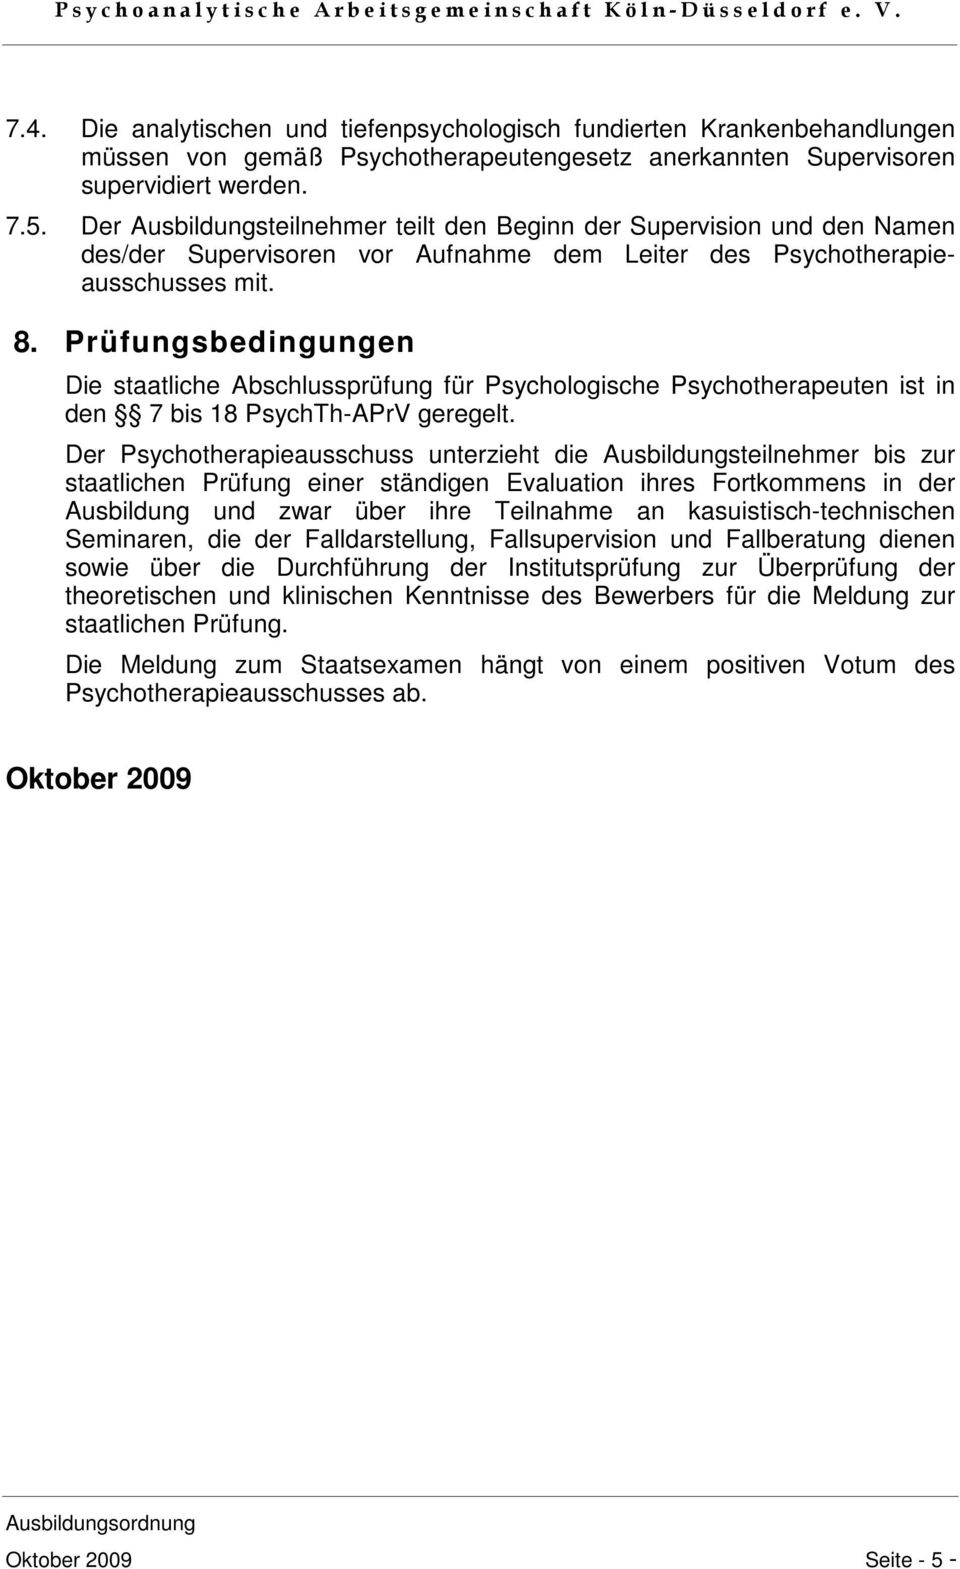 Prüfungsbedingungen Die staatliche Abschlussprüfung für Psychologische Psychotherapeuten ist in den 7 bis 18 PsychTh-APrV geregelt.